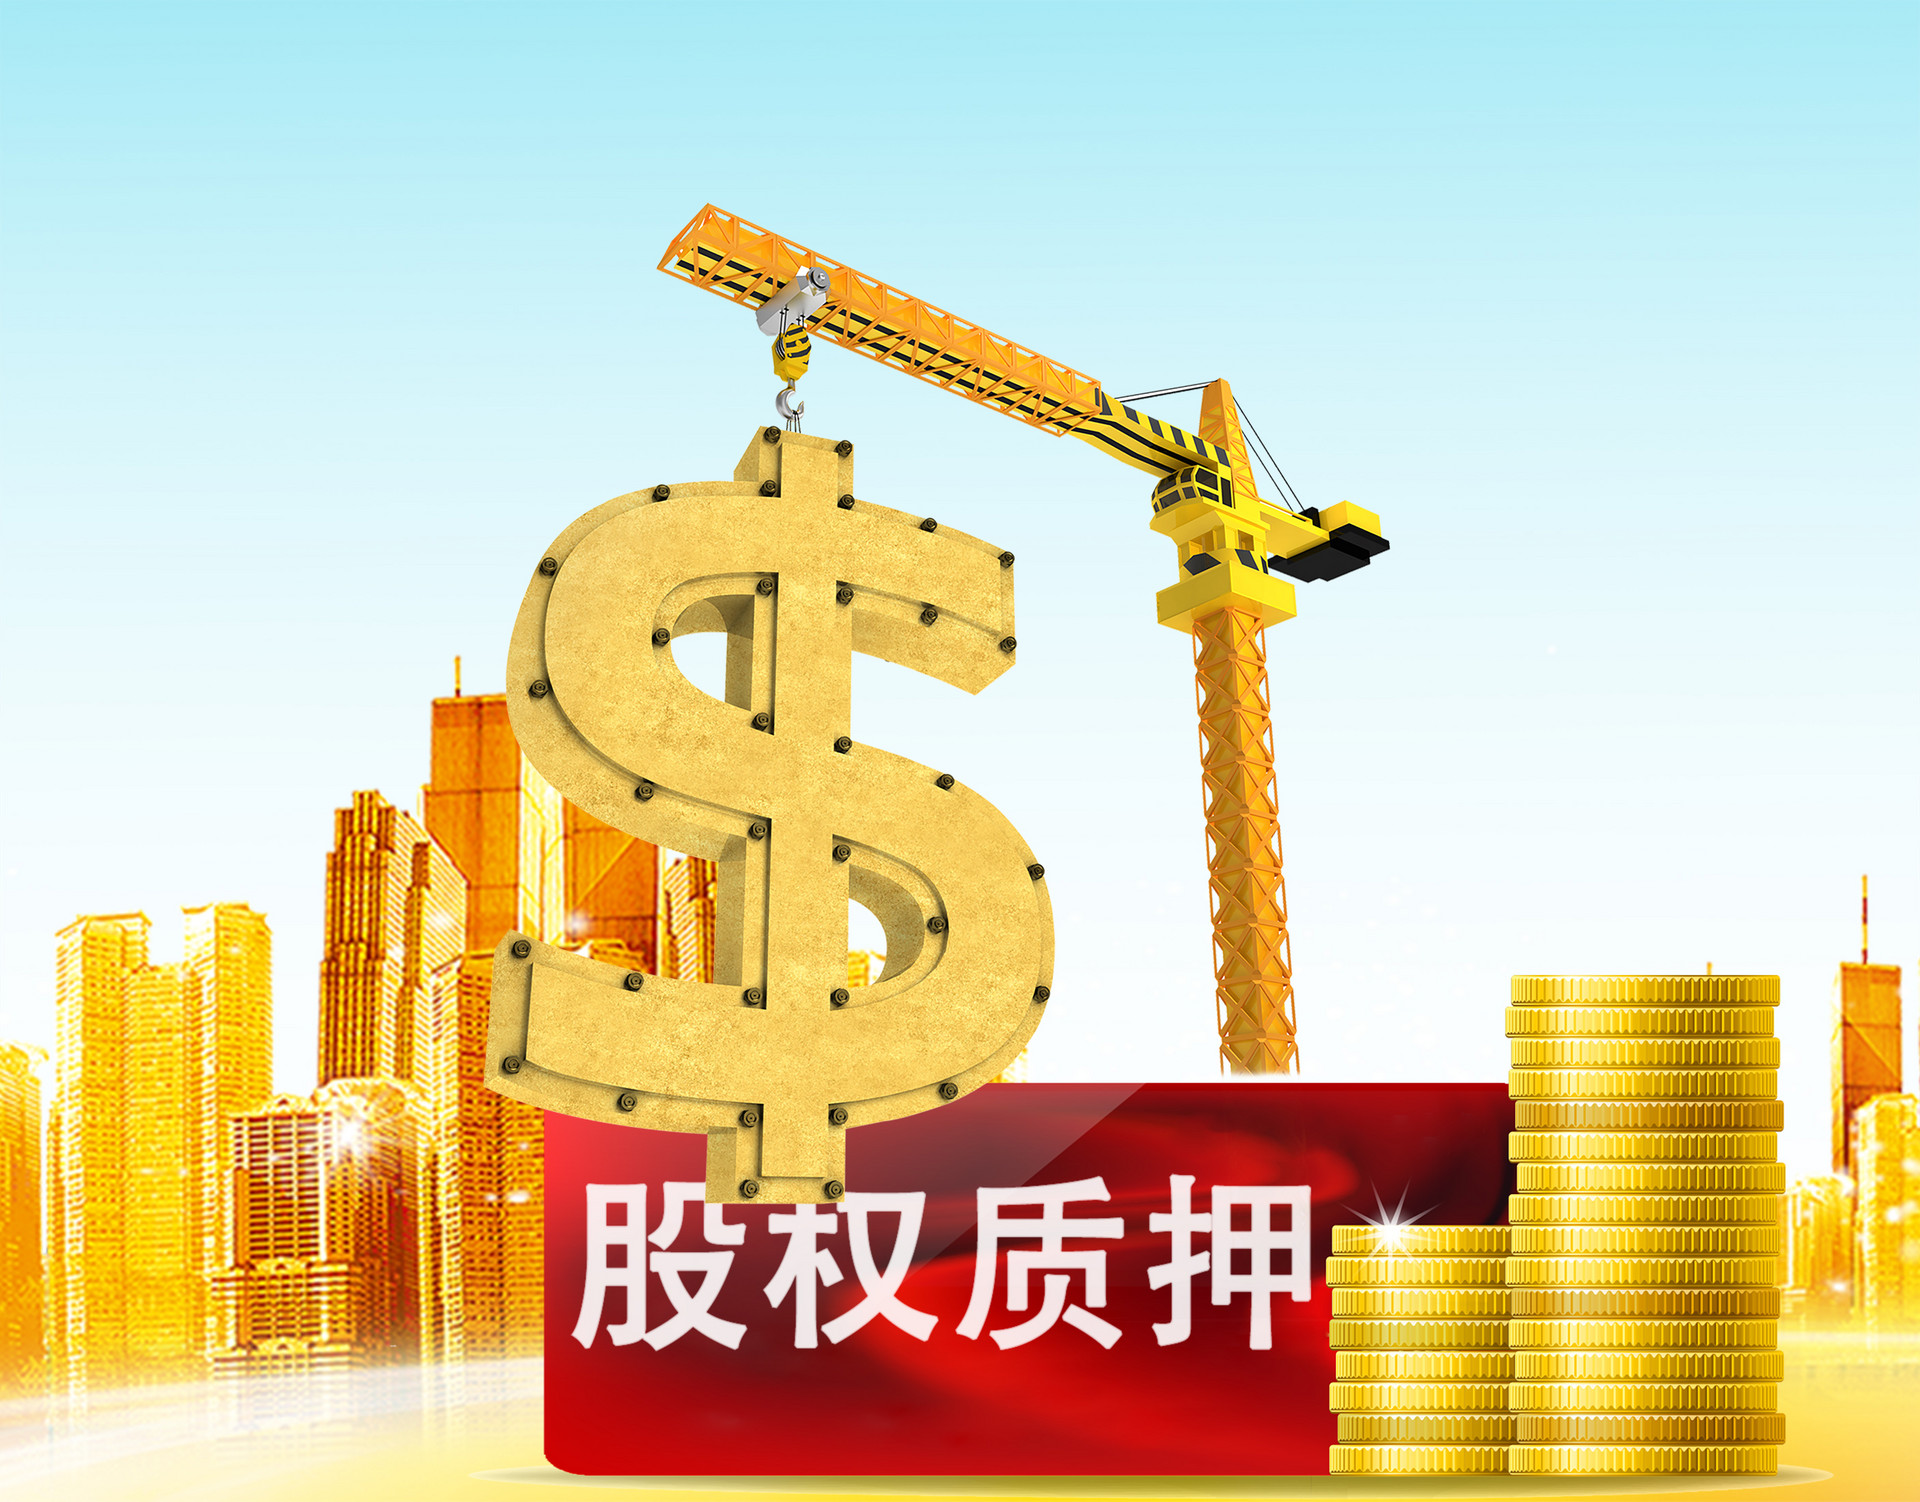 海航系桂林航旅集团股权被股东质押给银行